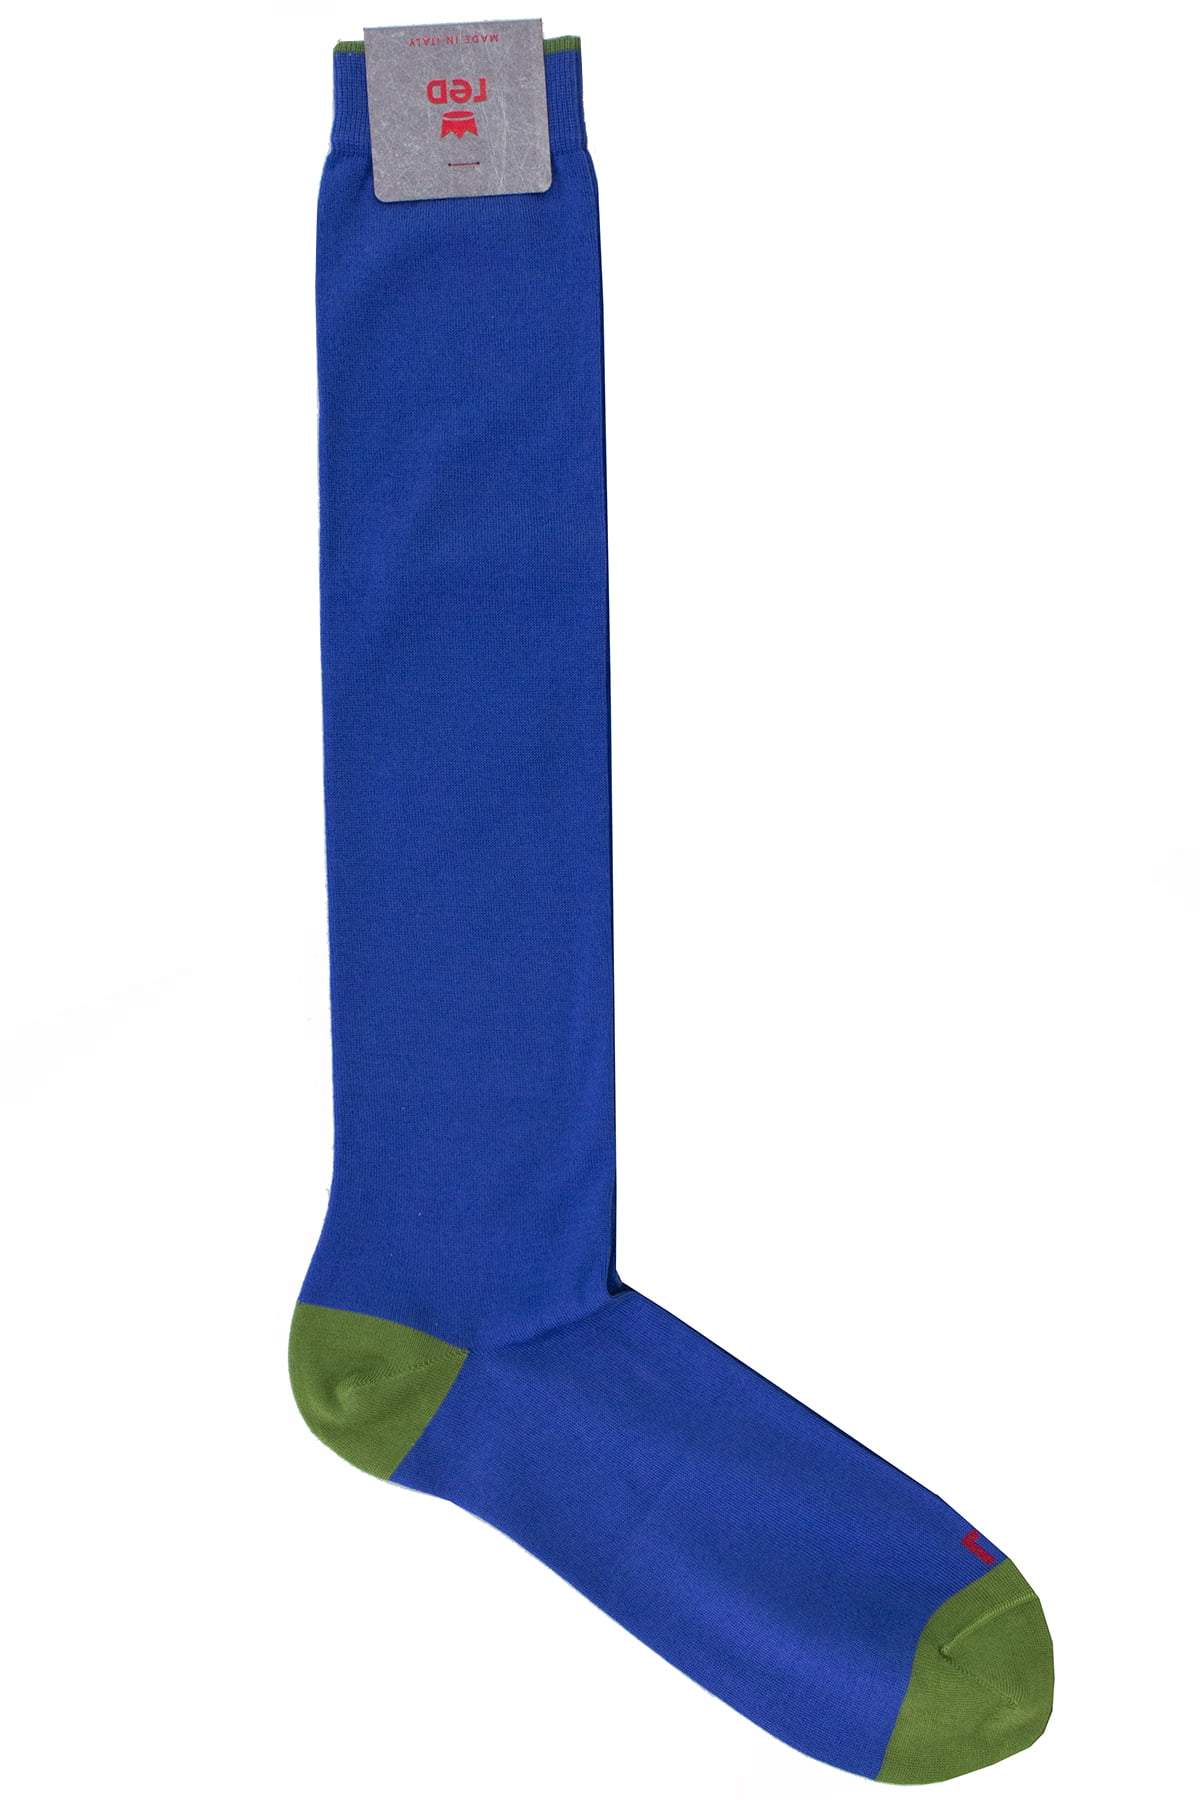 Calzini uomo royal blu tinta unita con bordino verde invernali lunghezza ginocchio